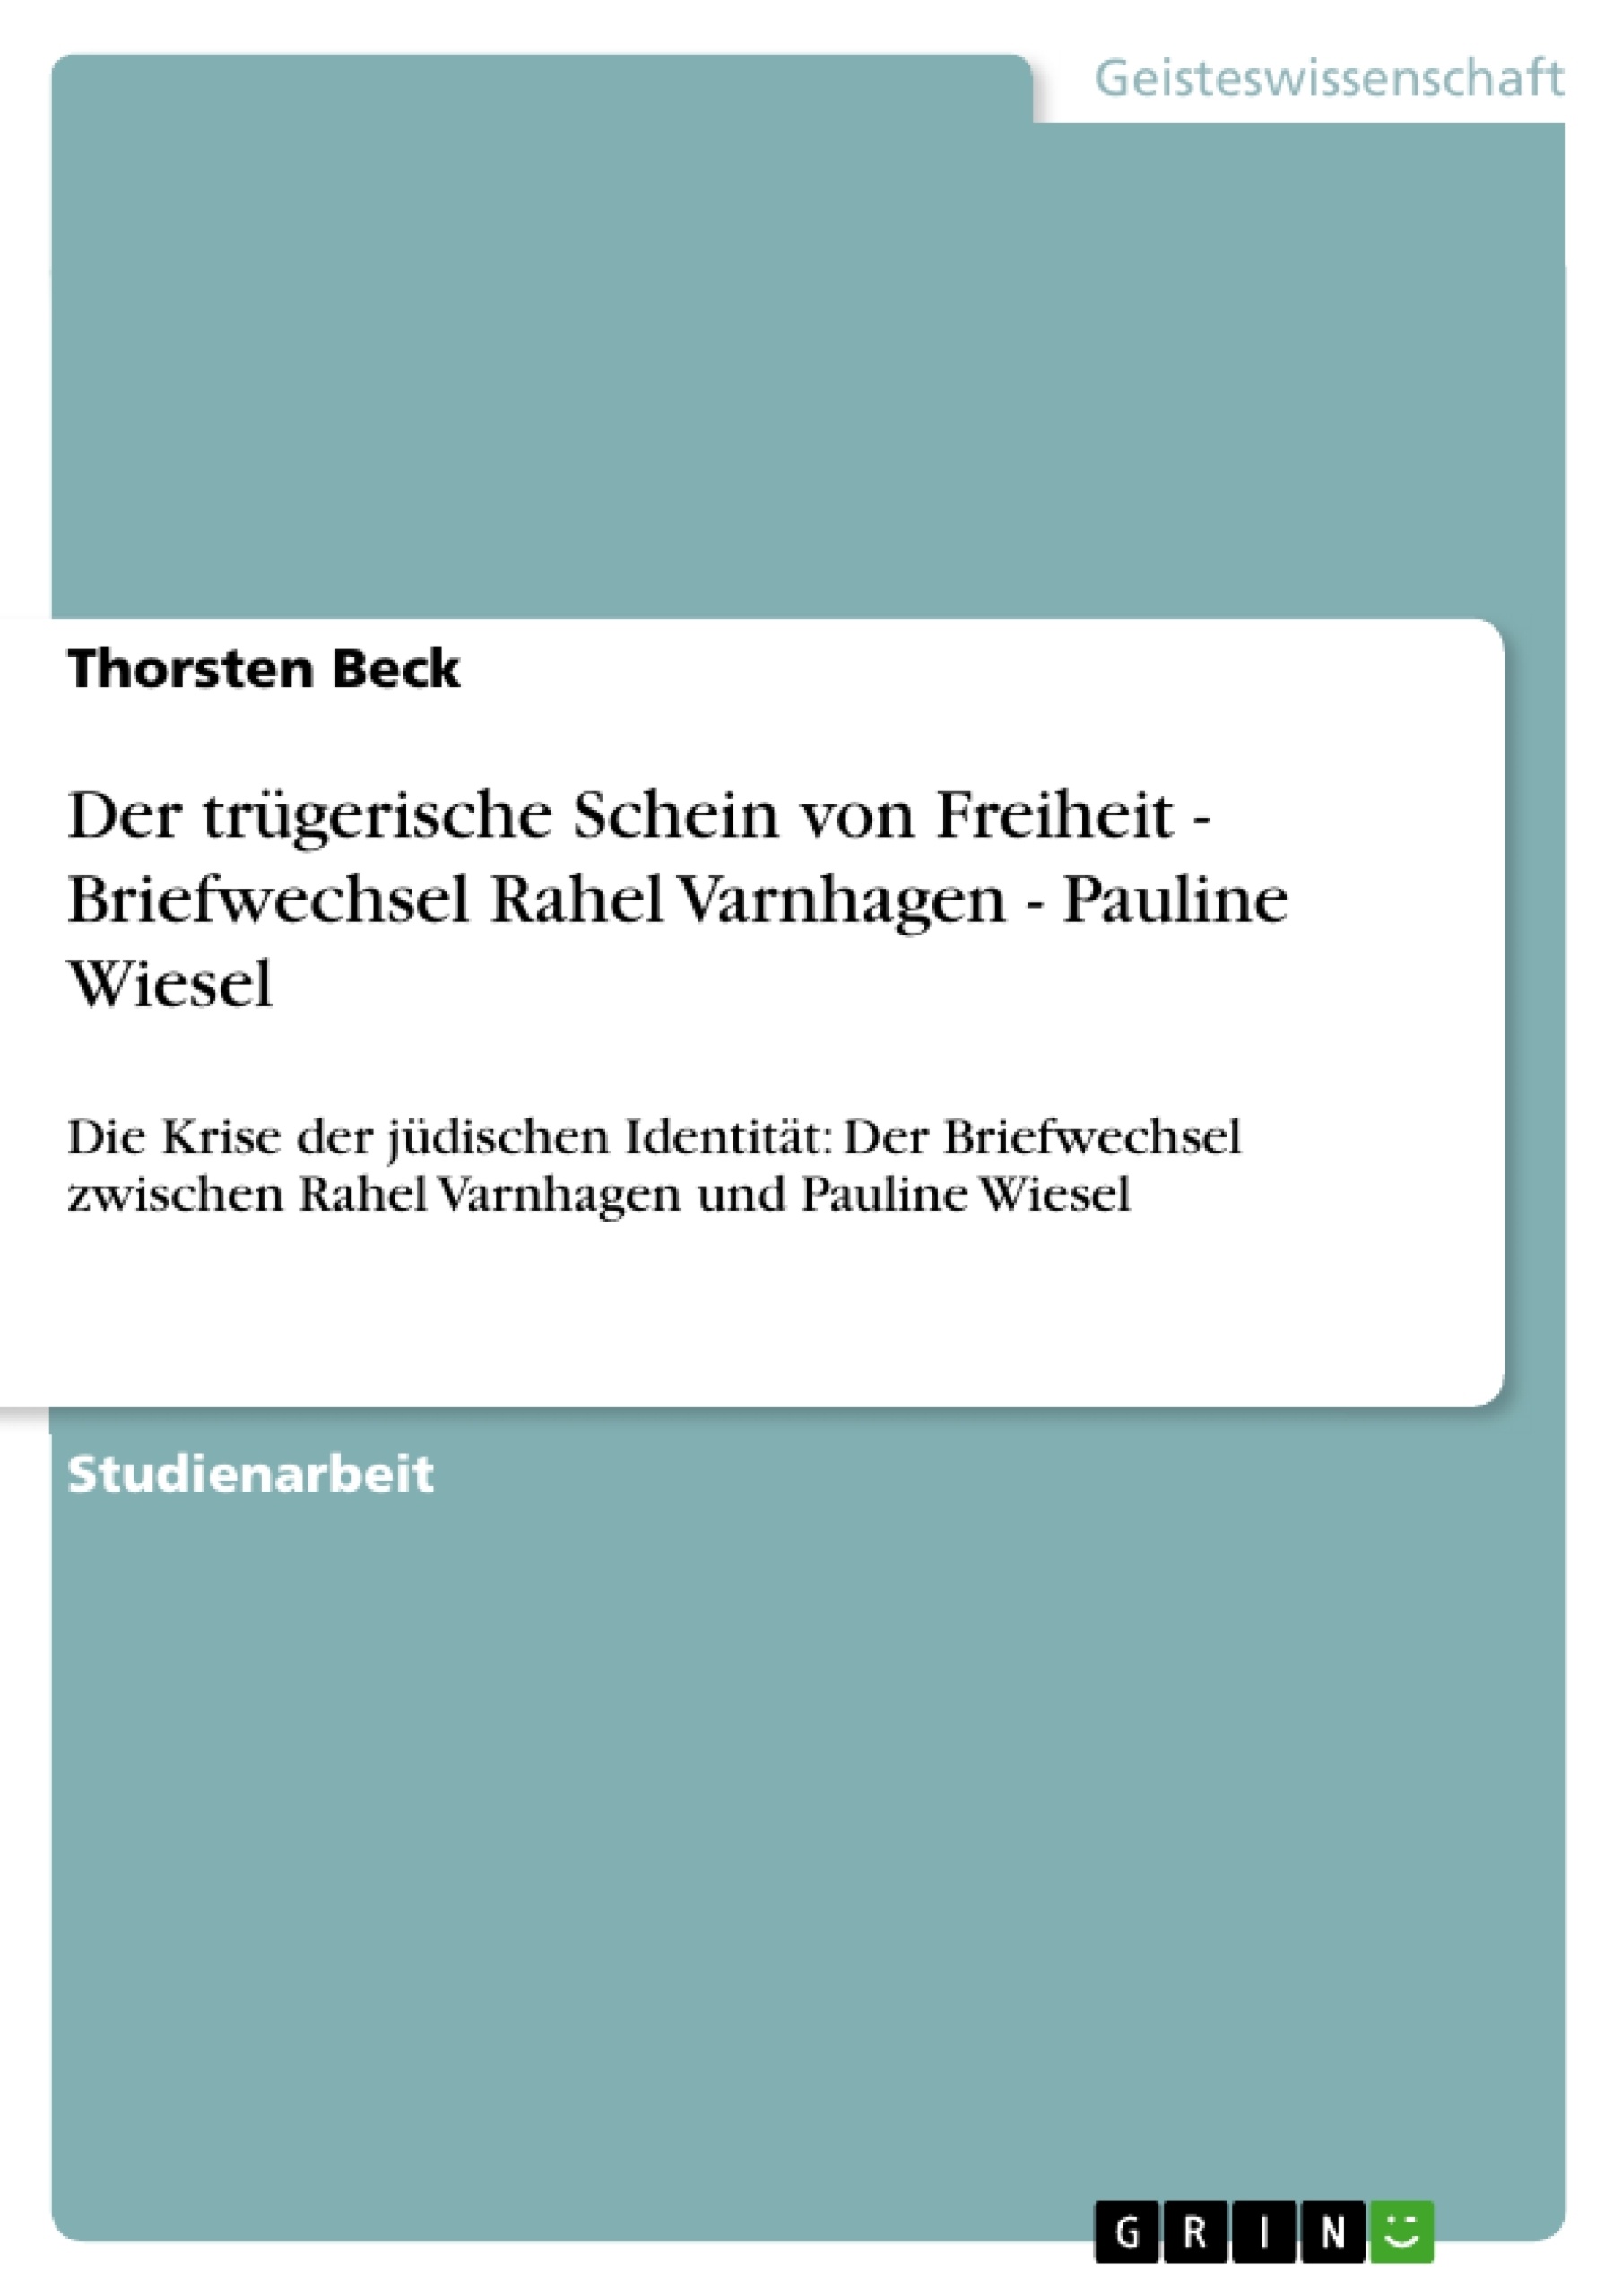 Título: Der trügerische Schein von Freiheit - Briefwechsel Rahel Varnhagen - Pauline Wiesel